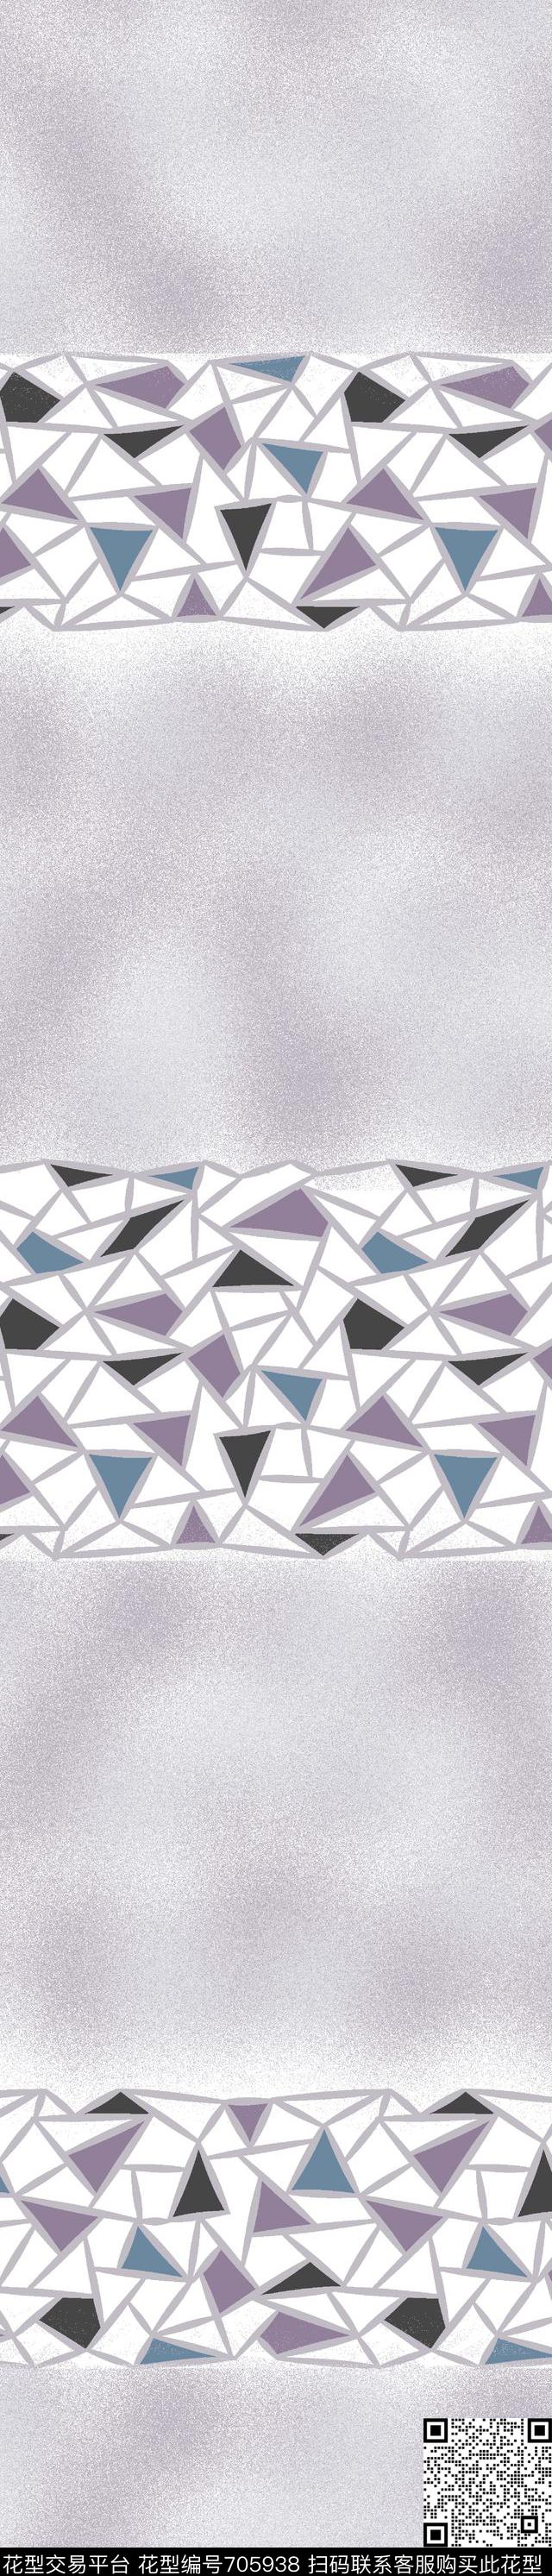 015.jpg - 705938 - 色块 三角形 几何 - 传统印花花型 － 窗帘花型设计 － 瓦栏